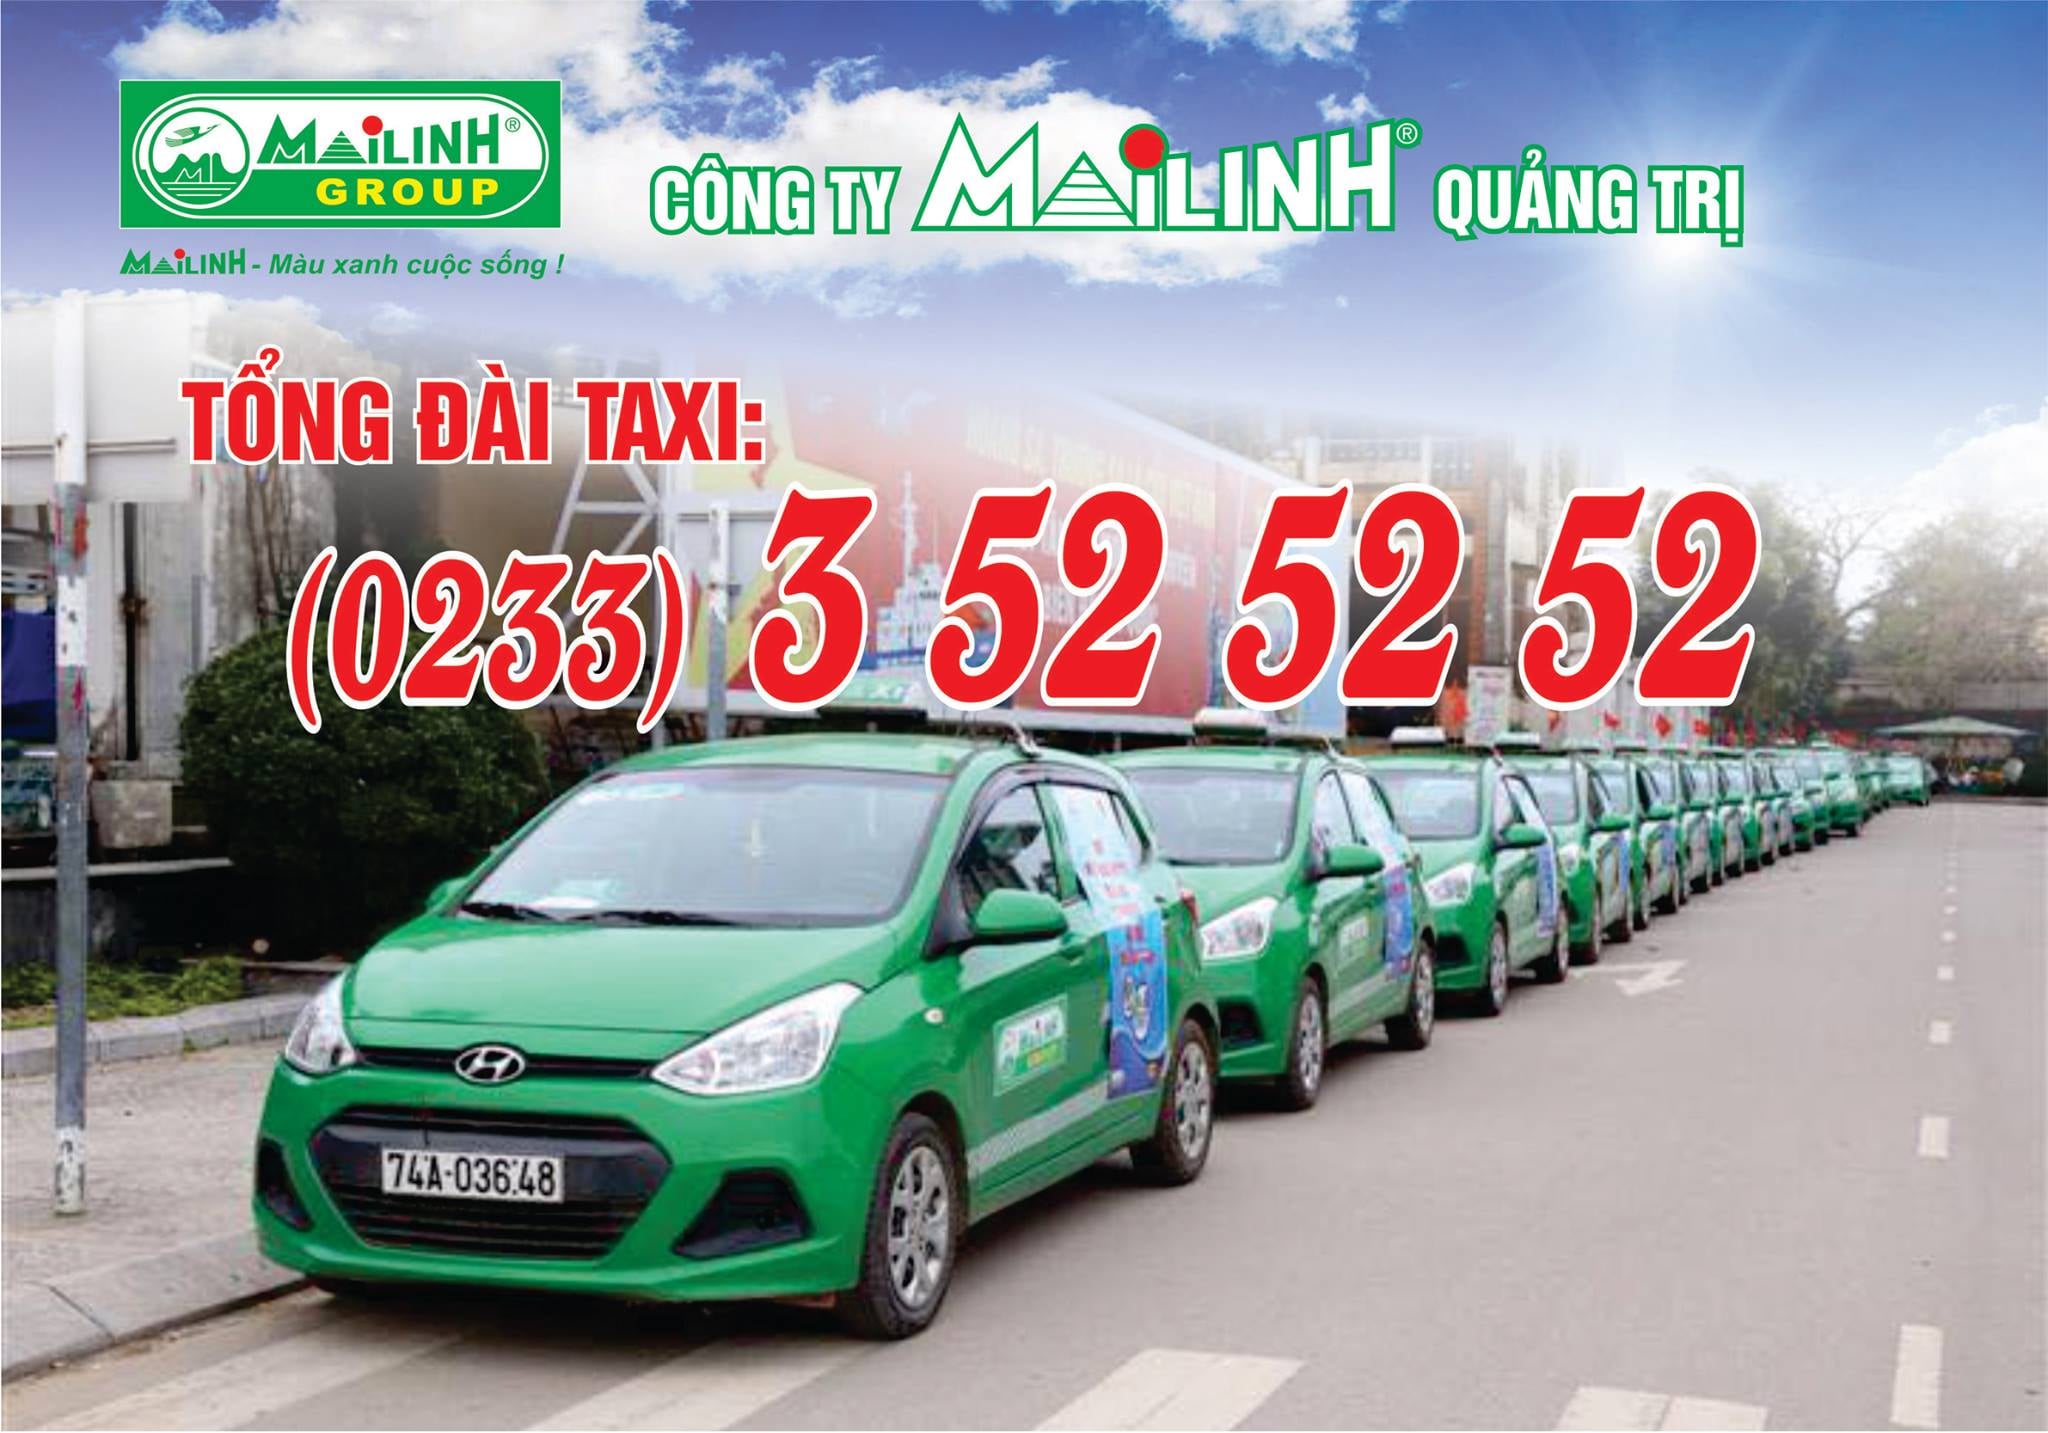 Tổng đài Taxi Mai Linh Quảng Trị